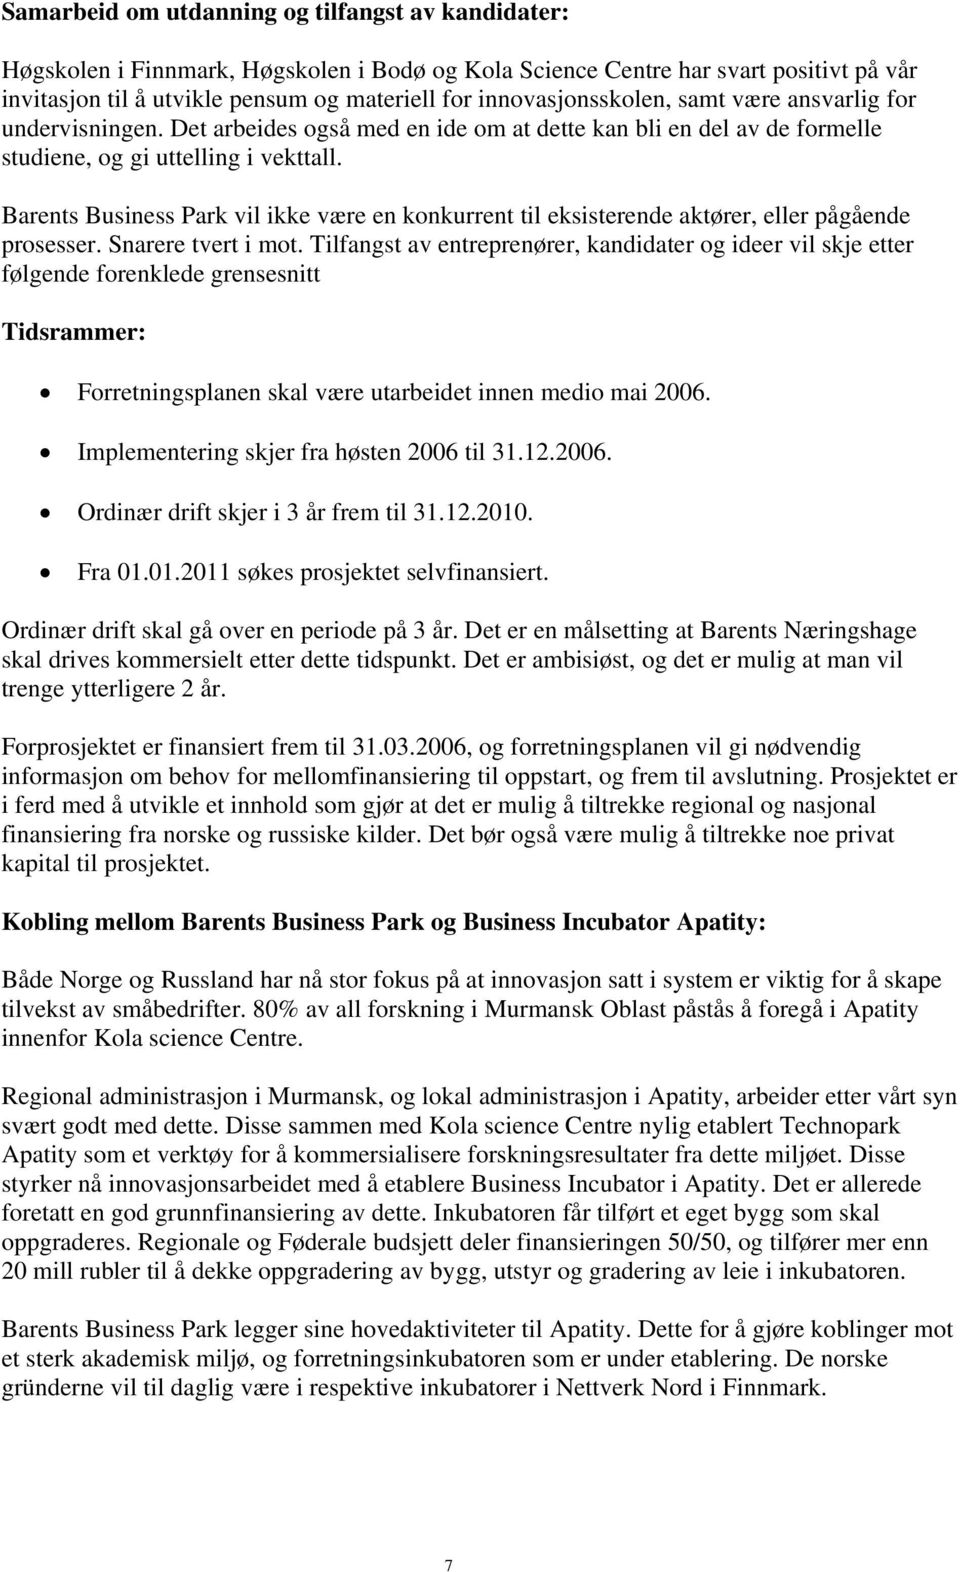 Barents Business Park vil ikke være en konkurrent til eksisterende aktører, eller pågående prosesser. Snarere tvert i mot.